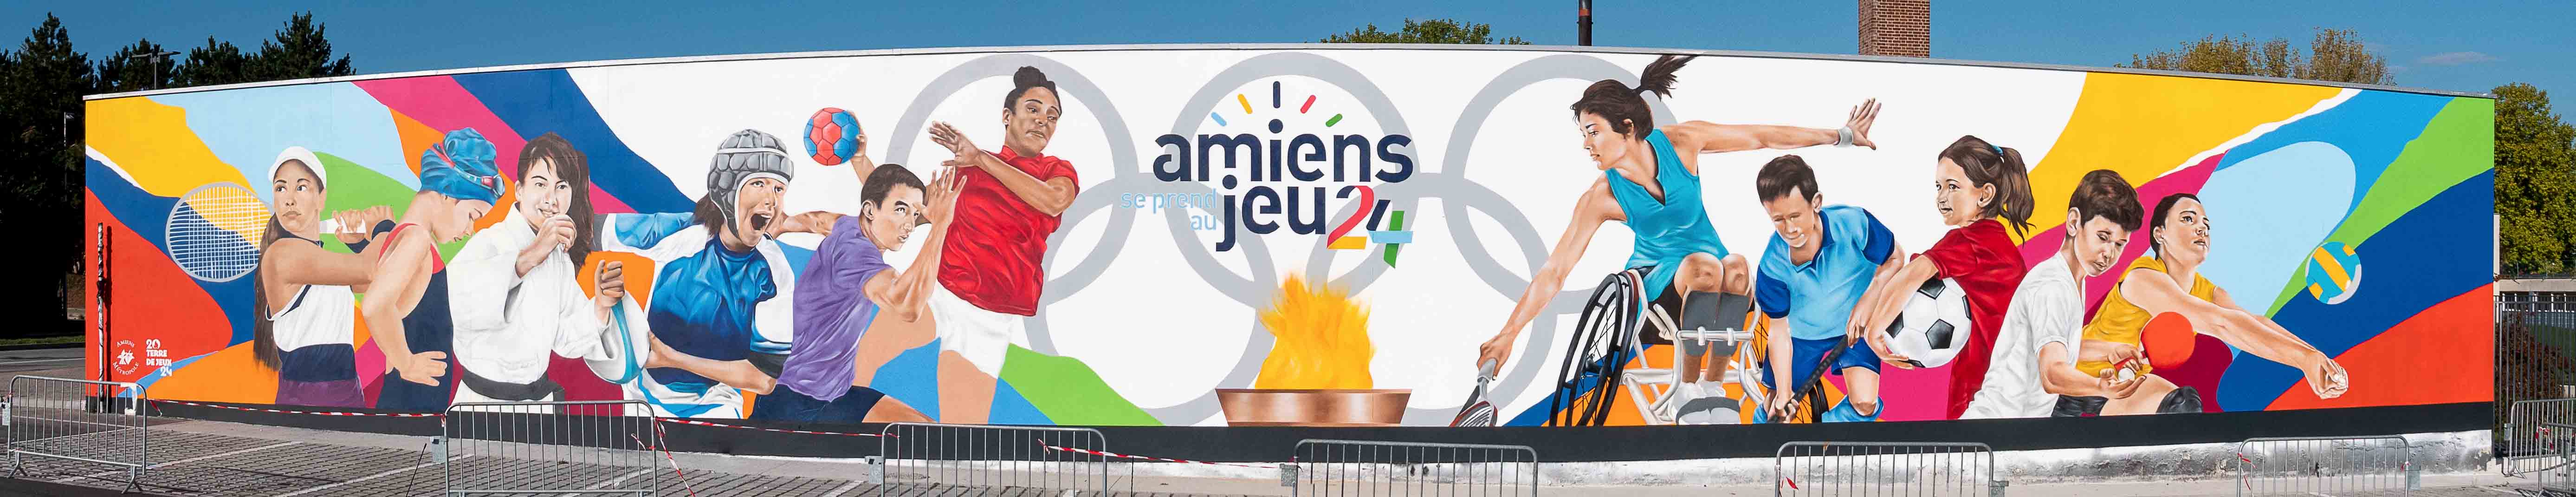 Amiens veut sa part du rêve olympique 17 © Yann Hubert